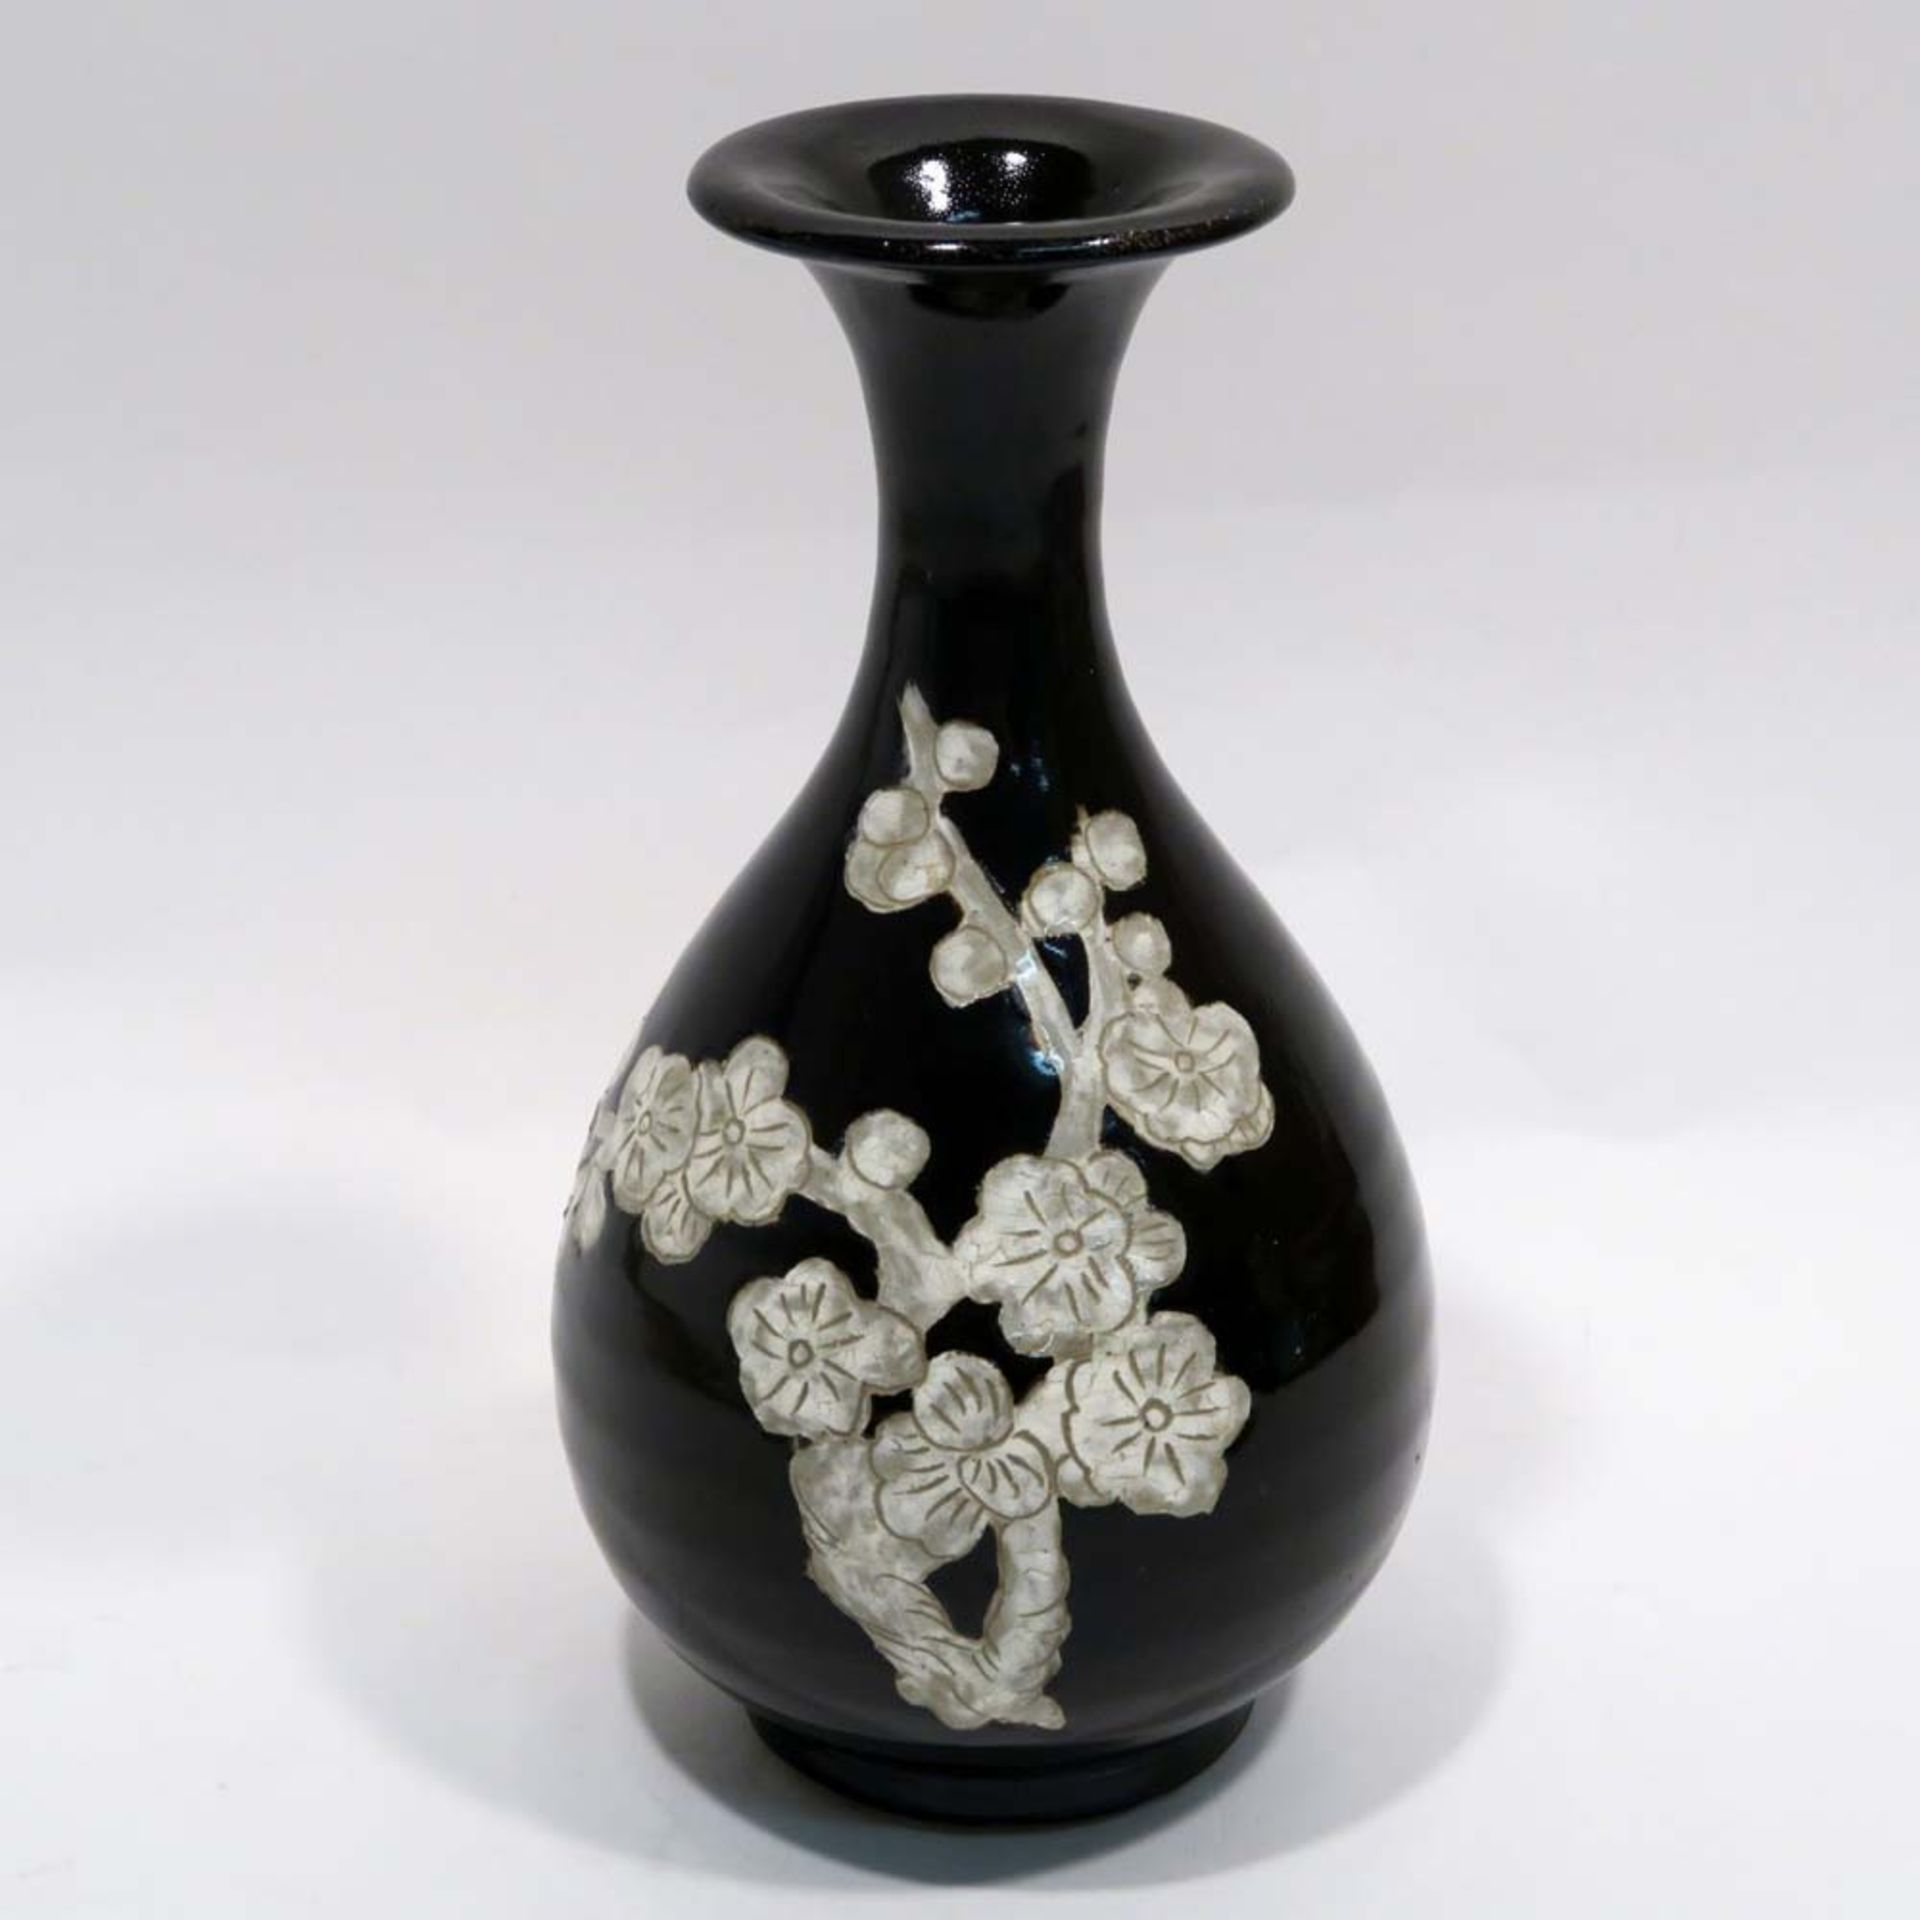 VaseChina, im Stil der Ming-Zeit. Steinzeug in der Art der Cizhou-Keramiken. Birnform mit